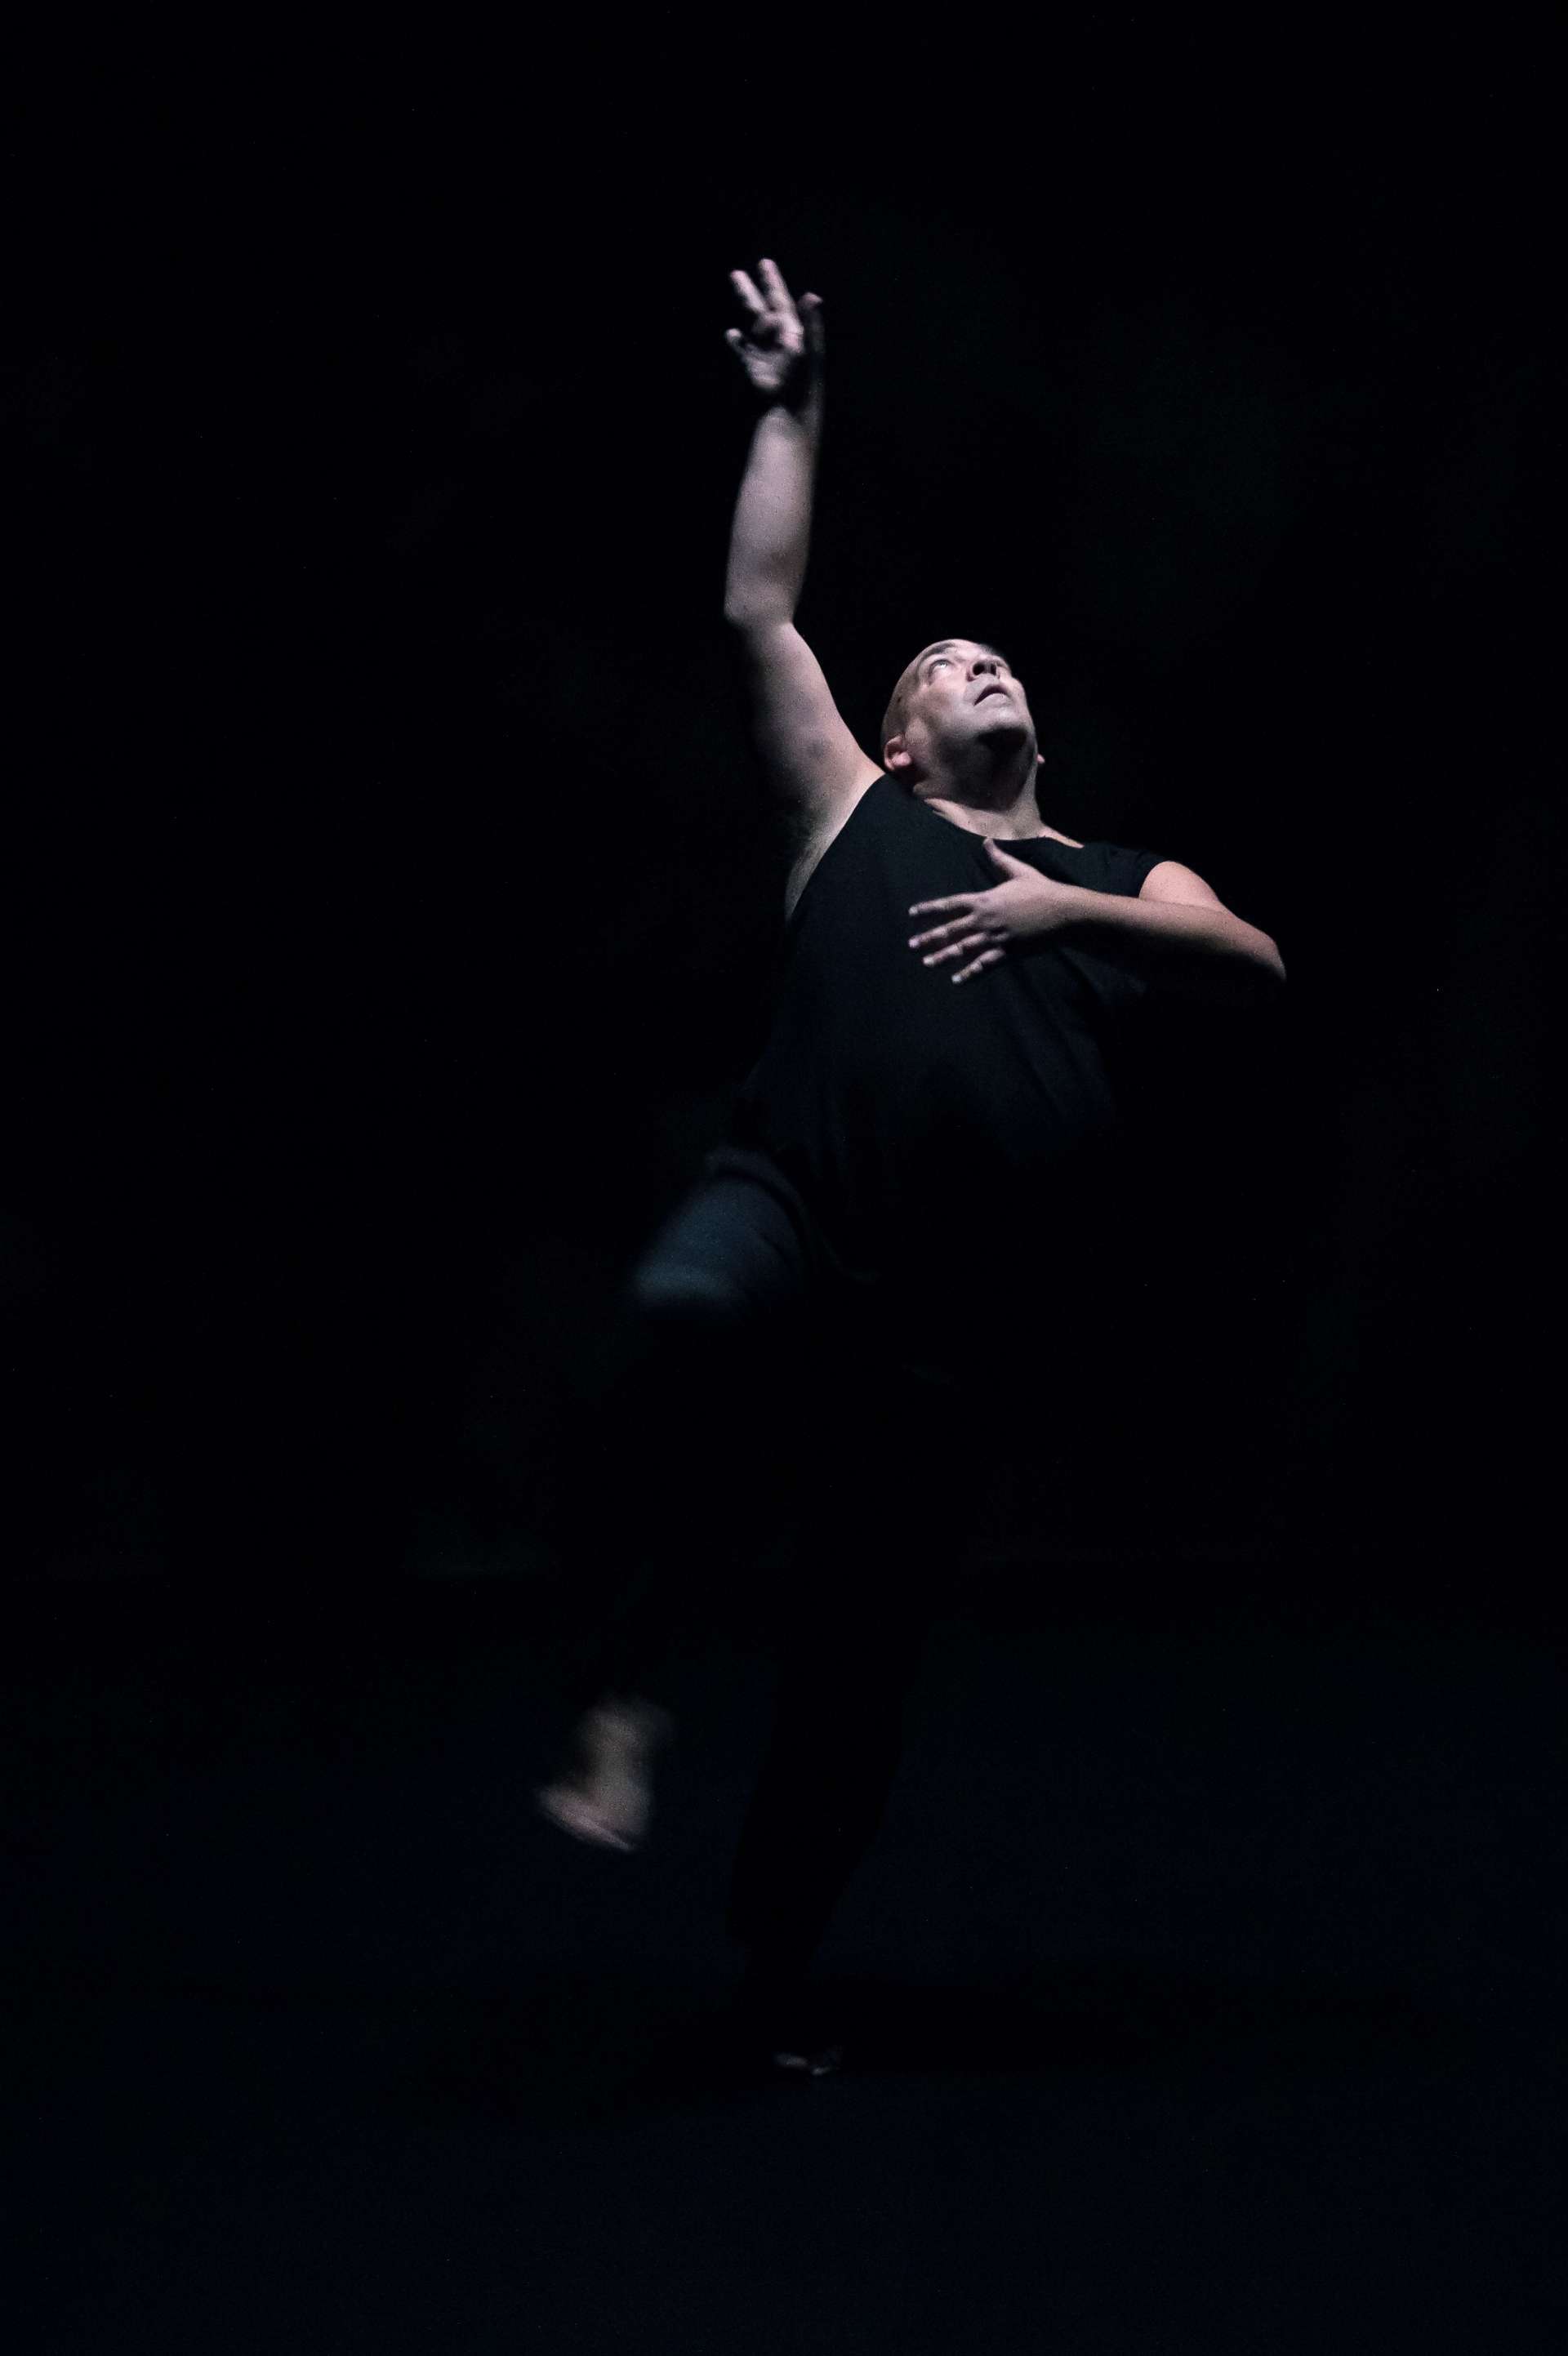 Fond noir et robe noire pour Thomas Lebrun. Il danse, une main en l'air et sa main gauche sur le cœur. 